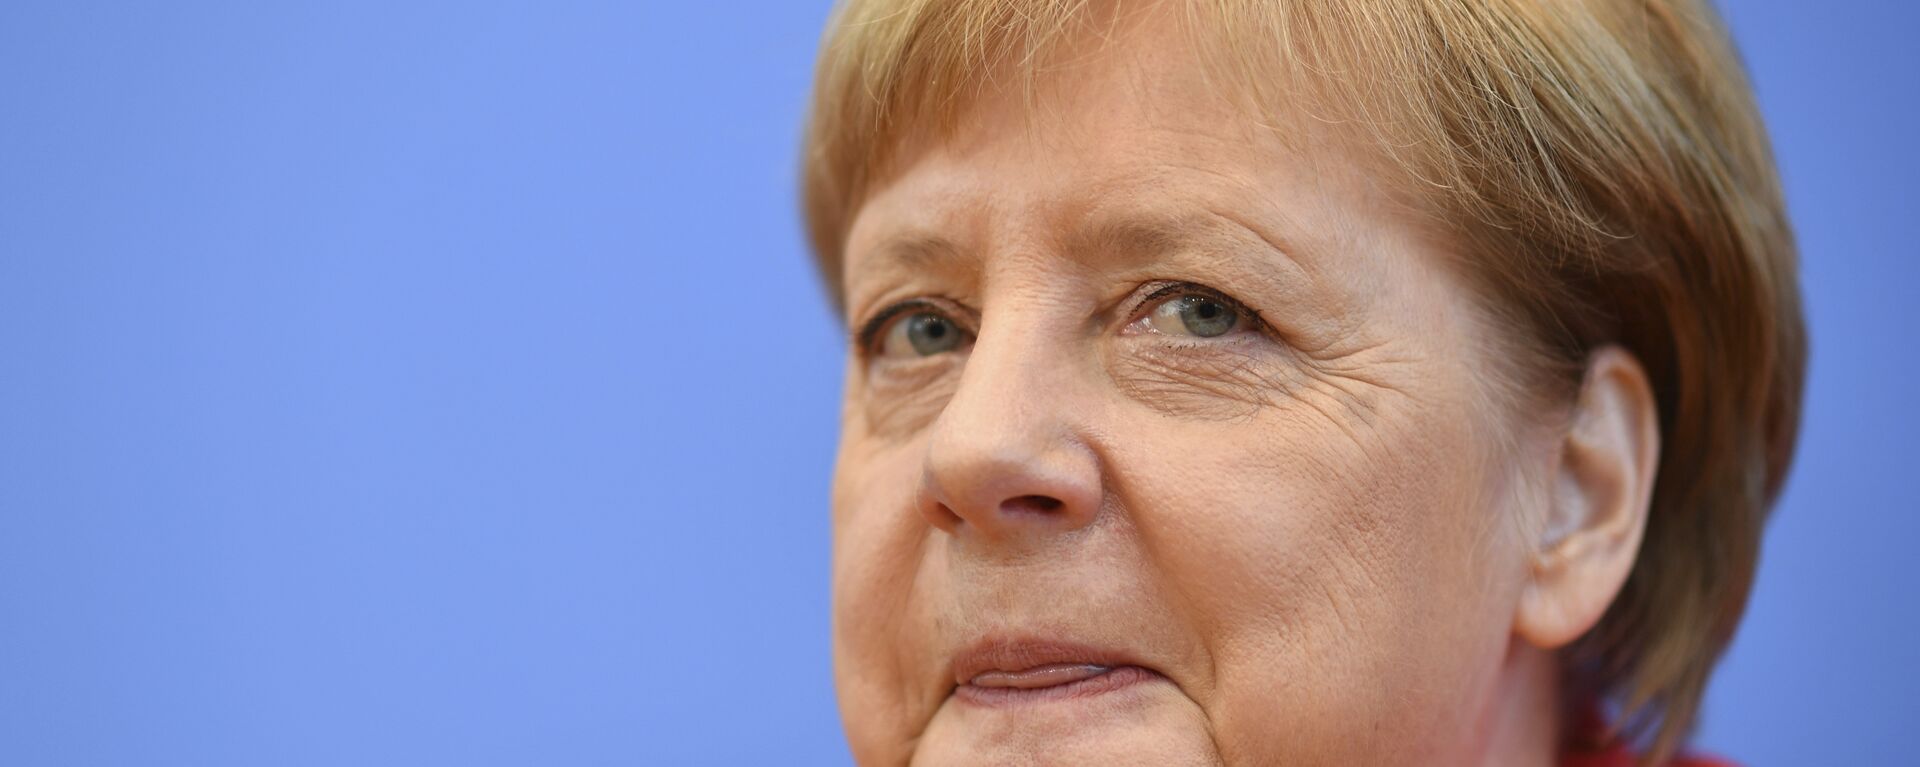 Angela Merkel, la excanciller de Alemania - Sputnik Mundo, 1920, 16.04.2021